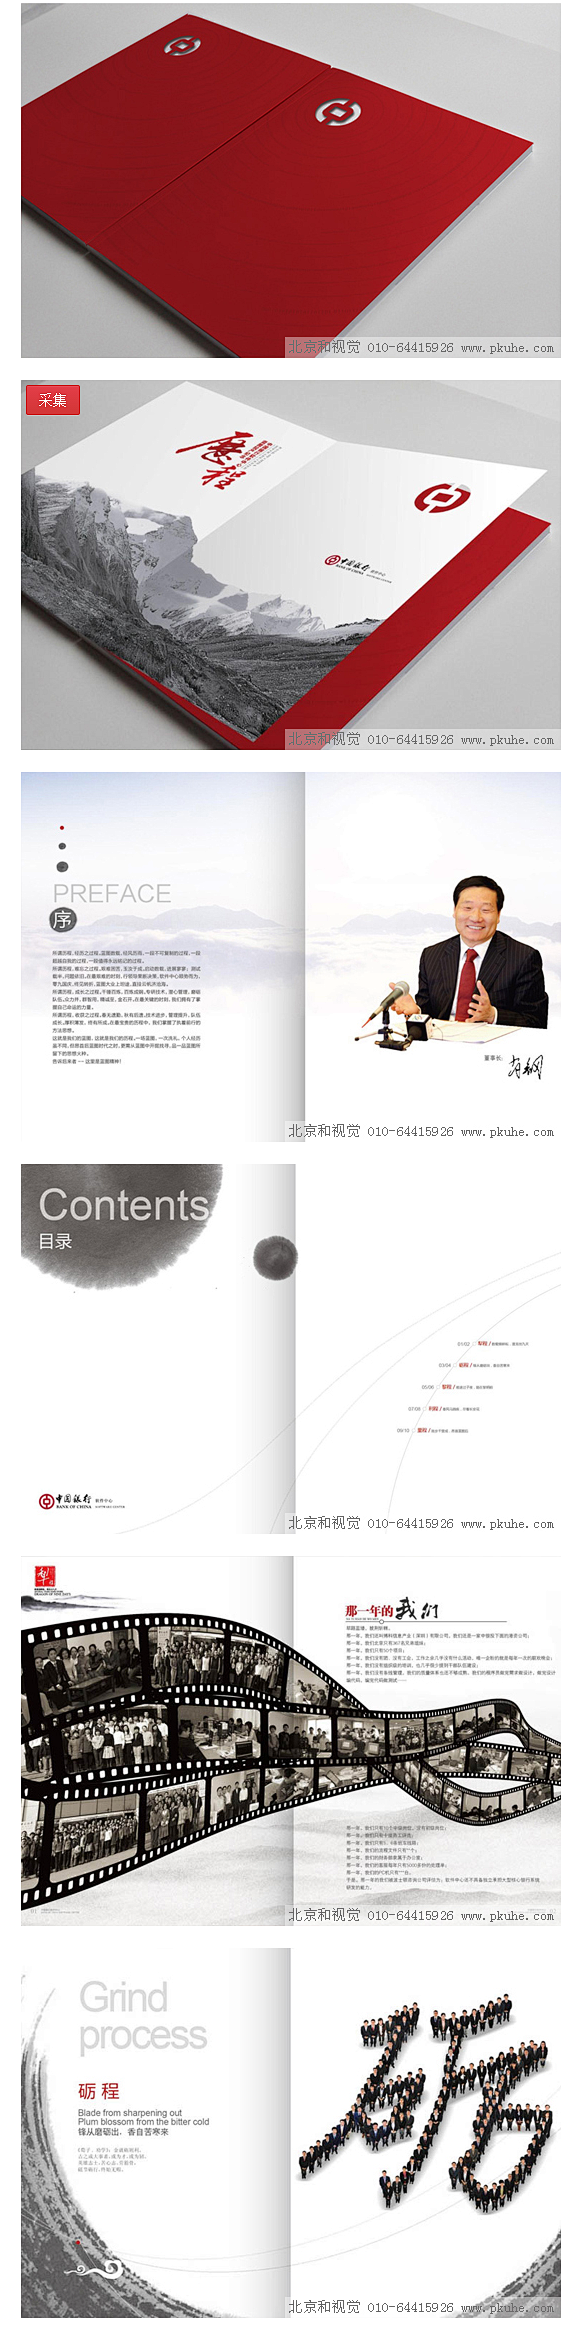 中国银行纪念画册1画册设计,宣传册设计,...